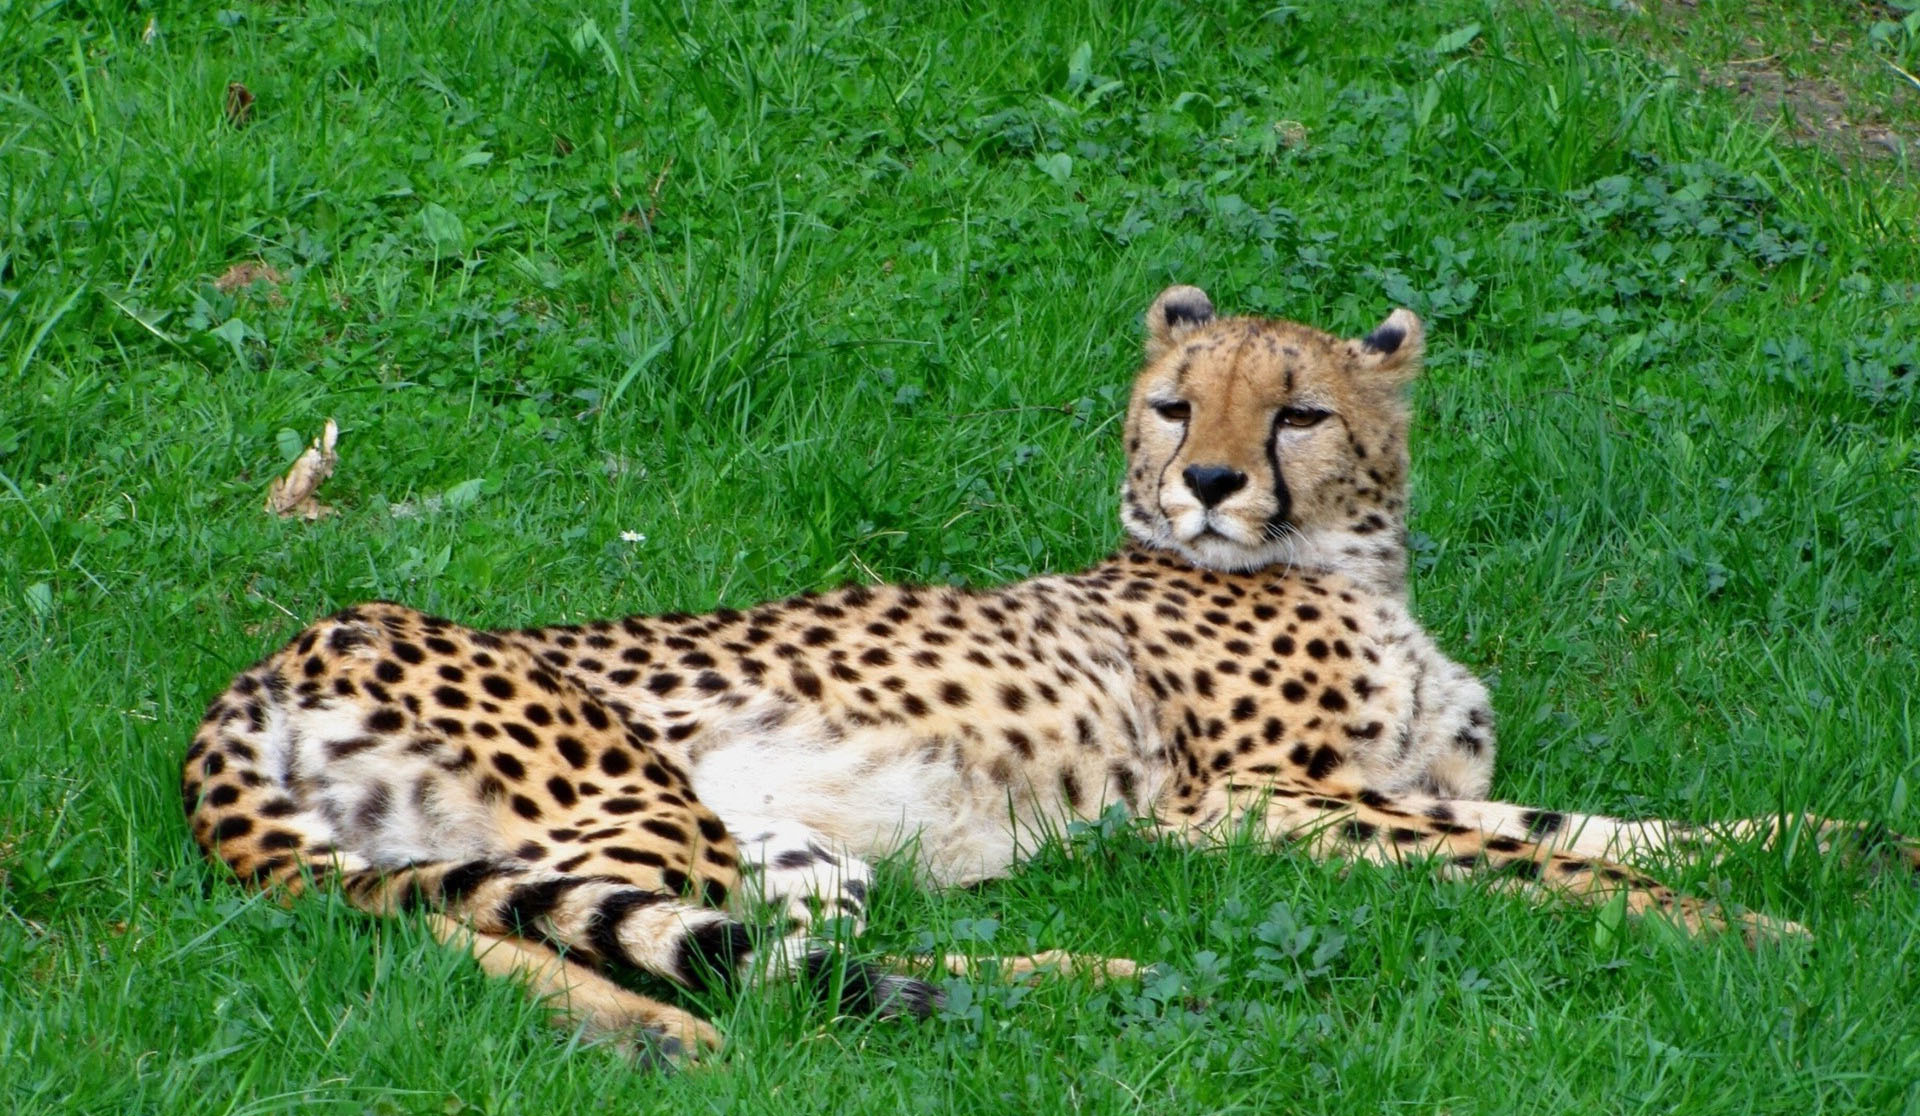 A Cheetah On The Grass Wallpaper